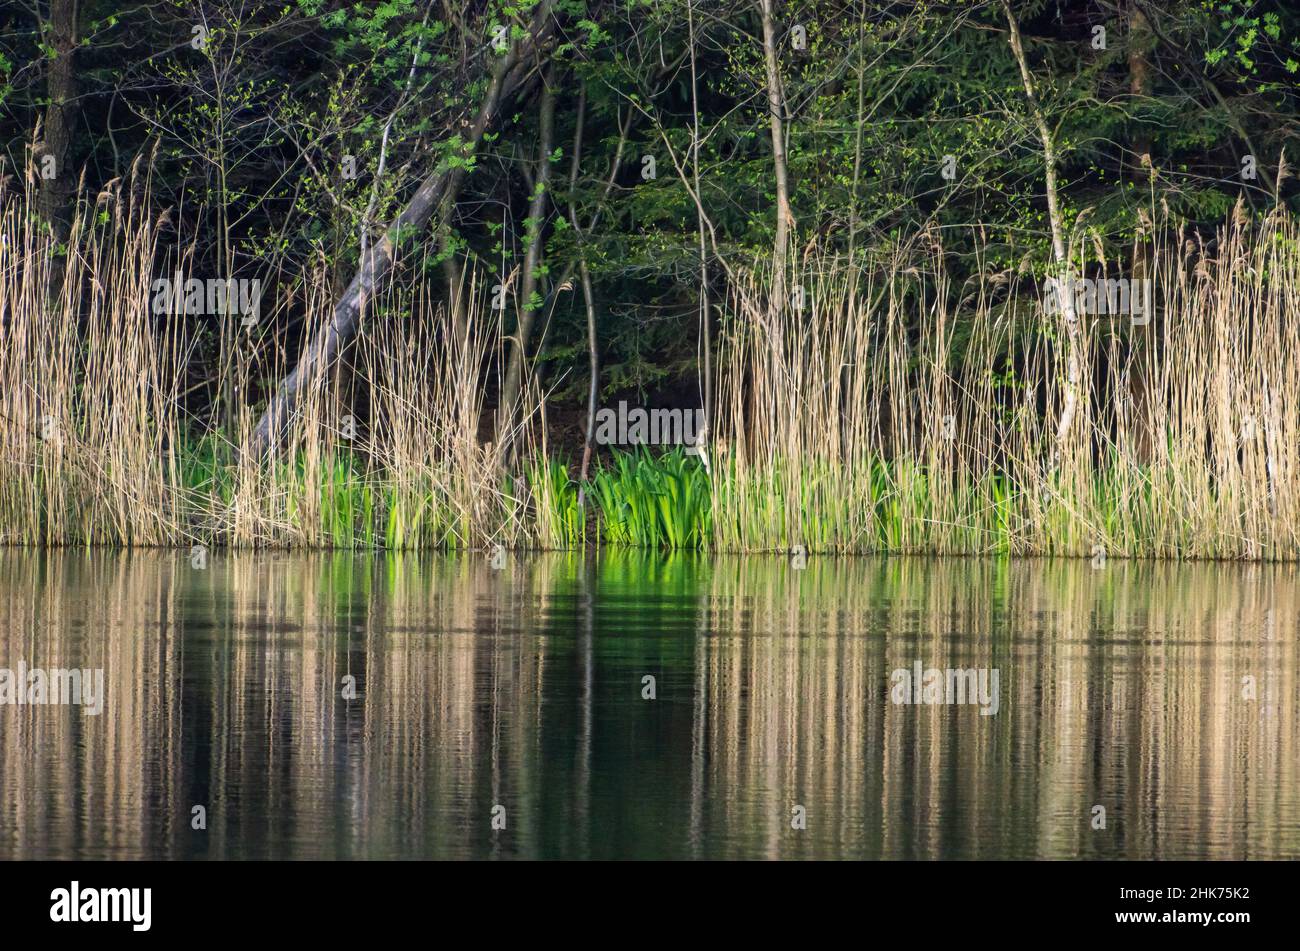 Une étroite ceinture de roseau au bord d'un étang rustique dans une zone boisée. Banque D'Images